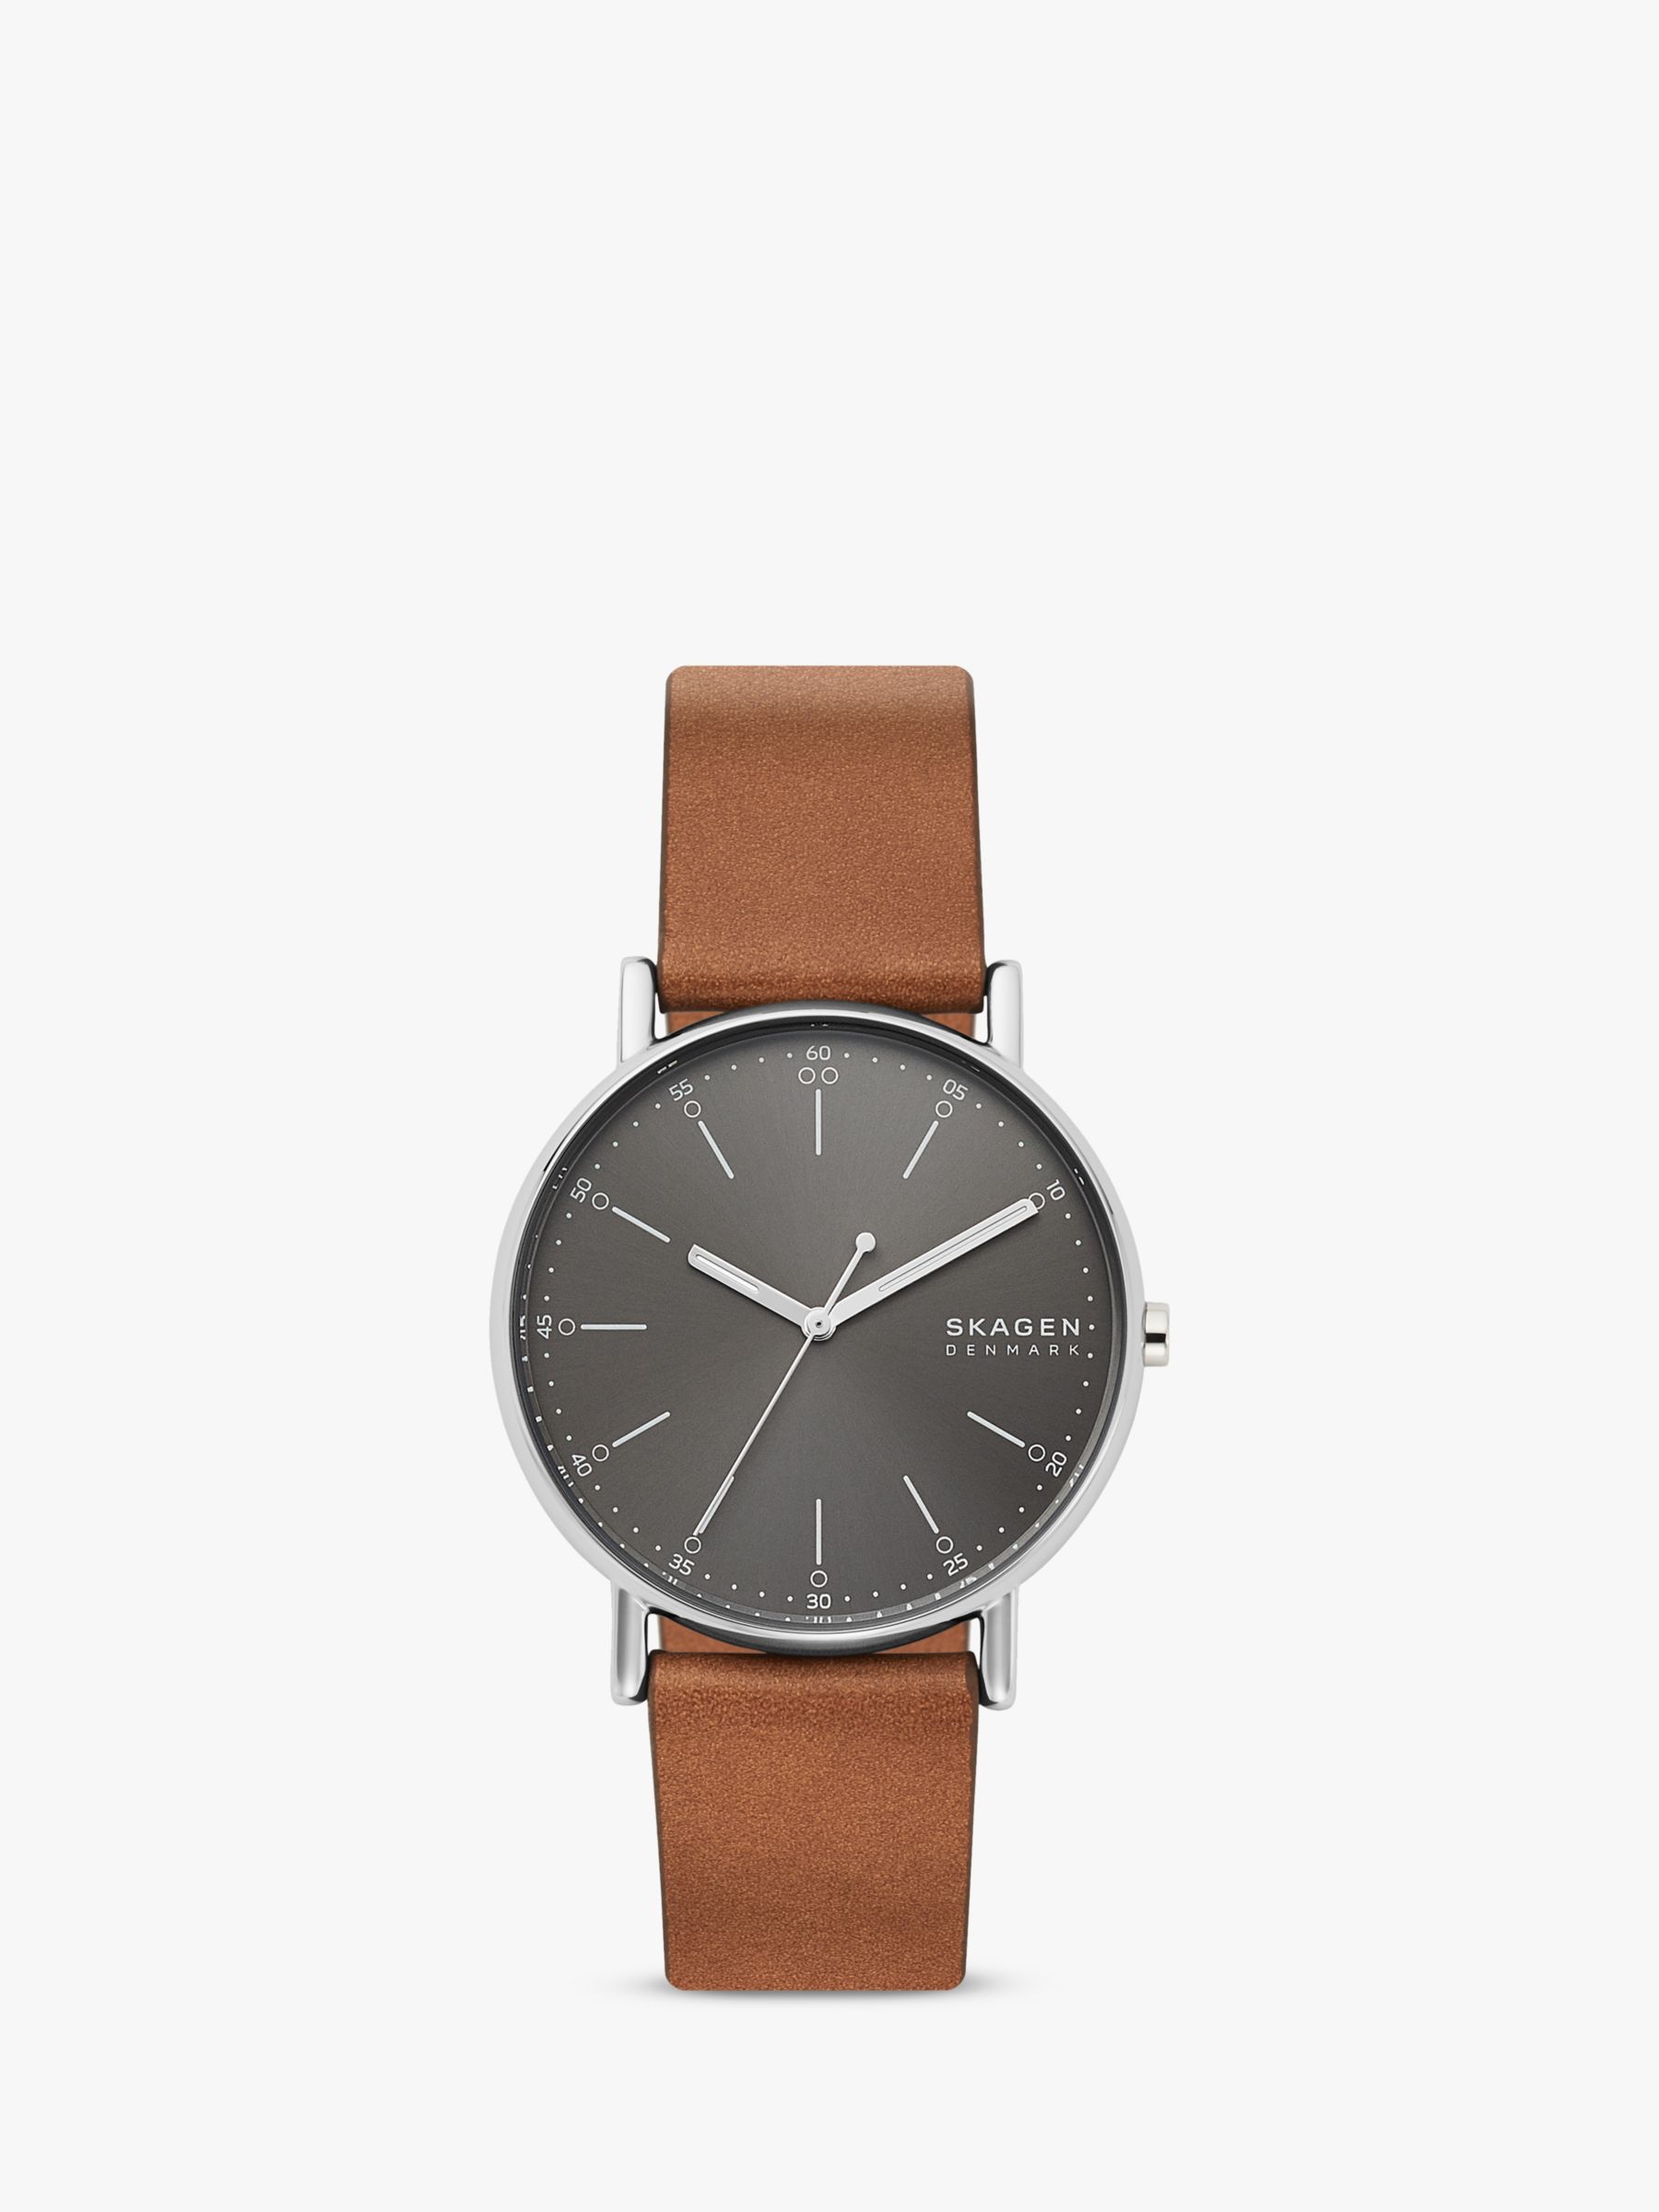 Skagen Men's Signatur Leather Strap Watch, Tan/Grey SKW6578